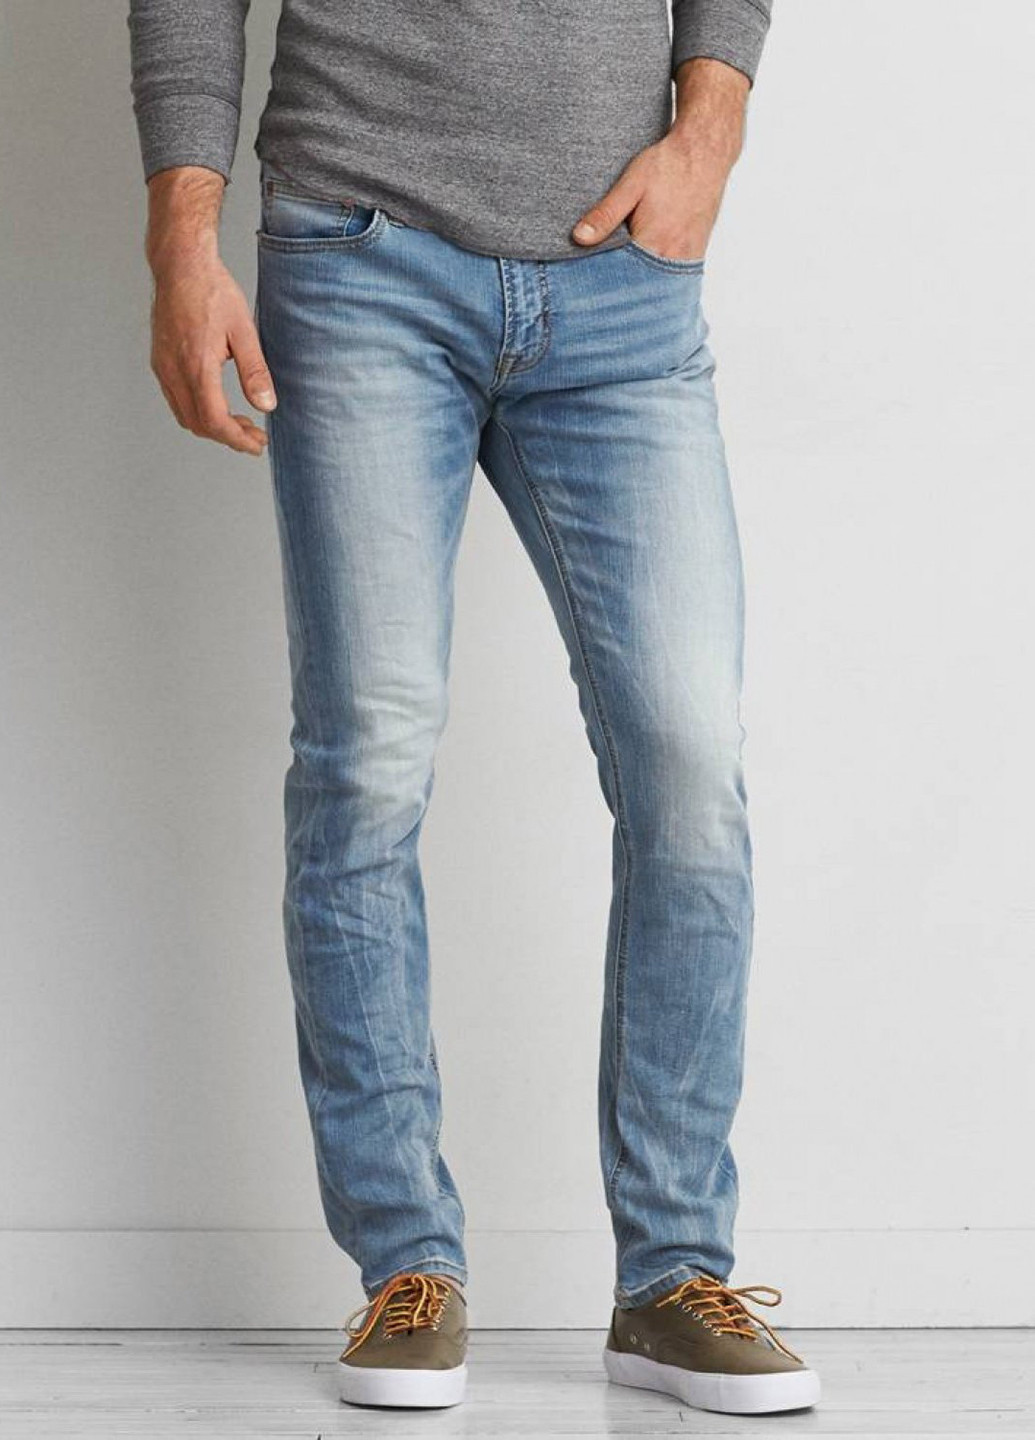 Голубые демисезонные скинни джинсы American Eagle